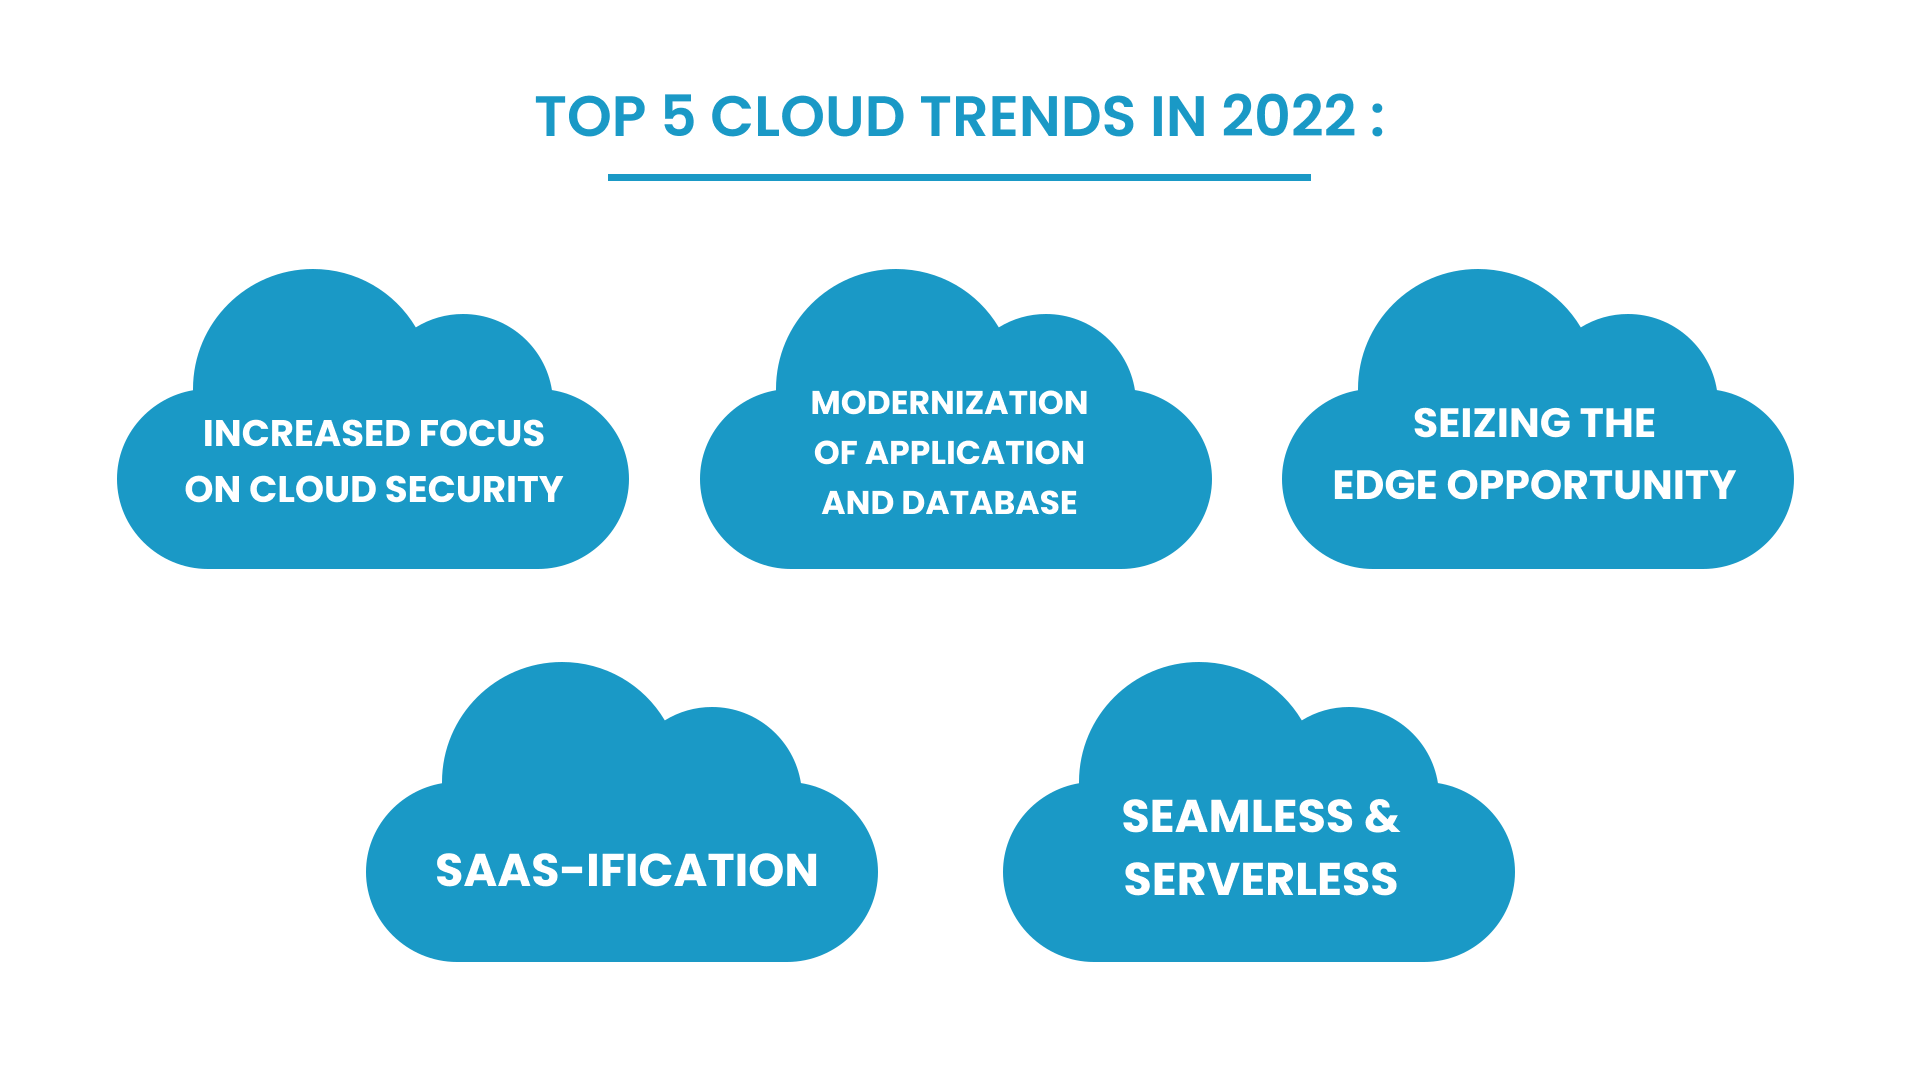 Top 5 Cloud Trends in 2022